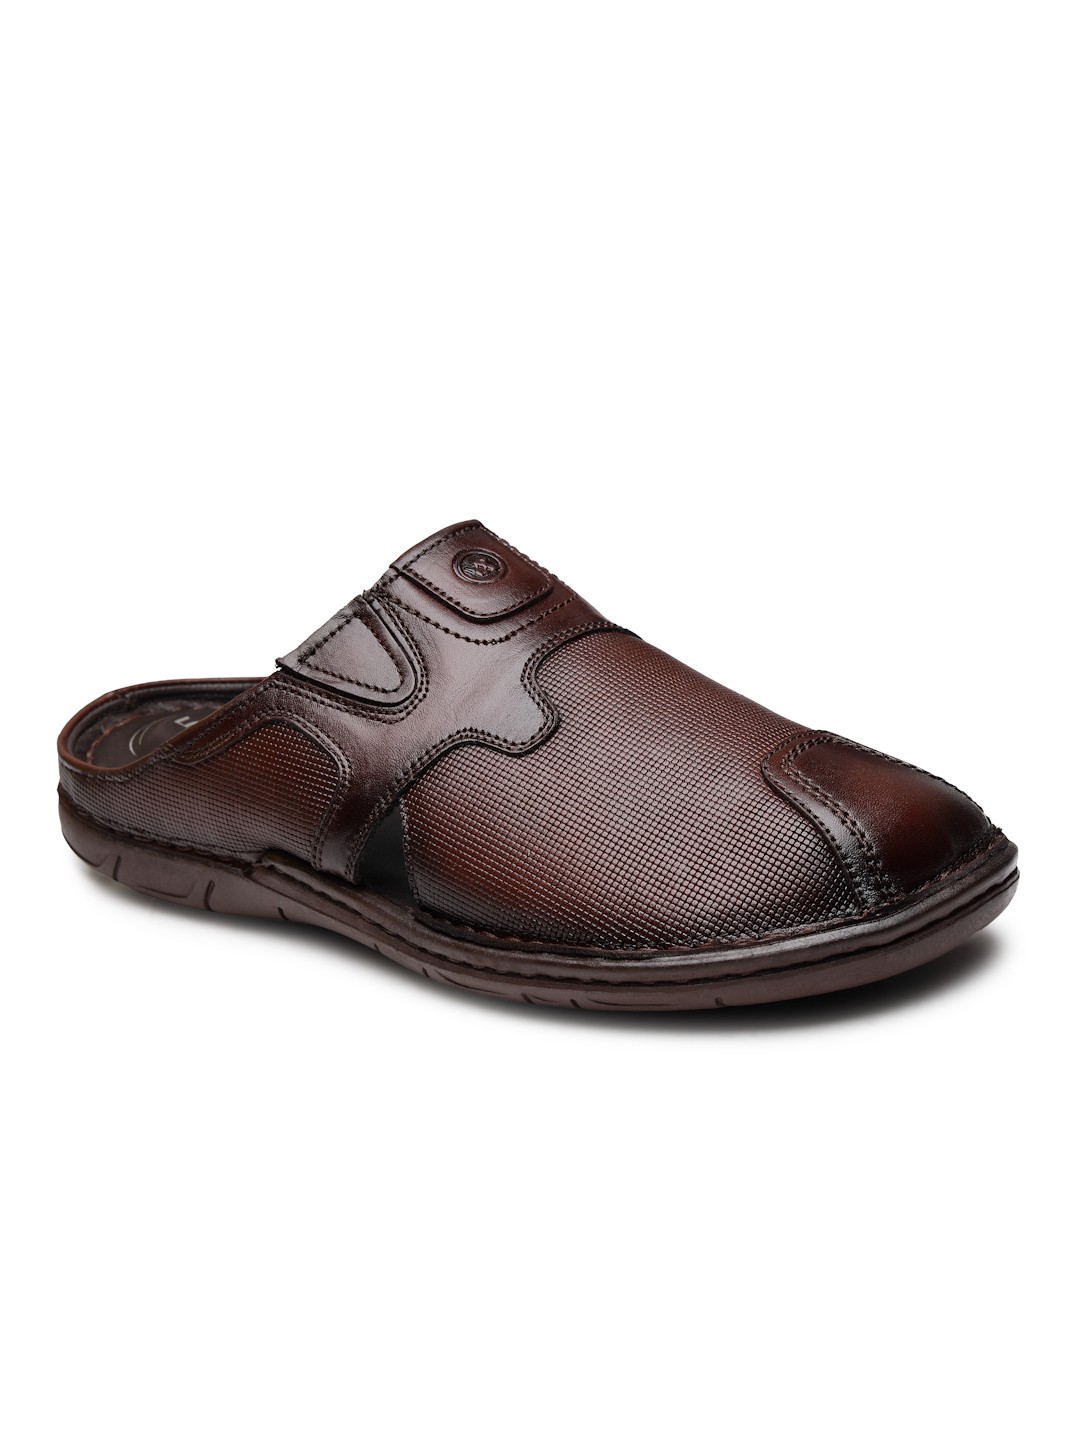 Buy Von Wellx Germany Comfort Men's Brown Slippers Arlo Online in Bihar